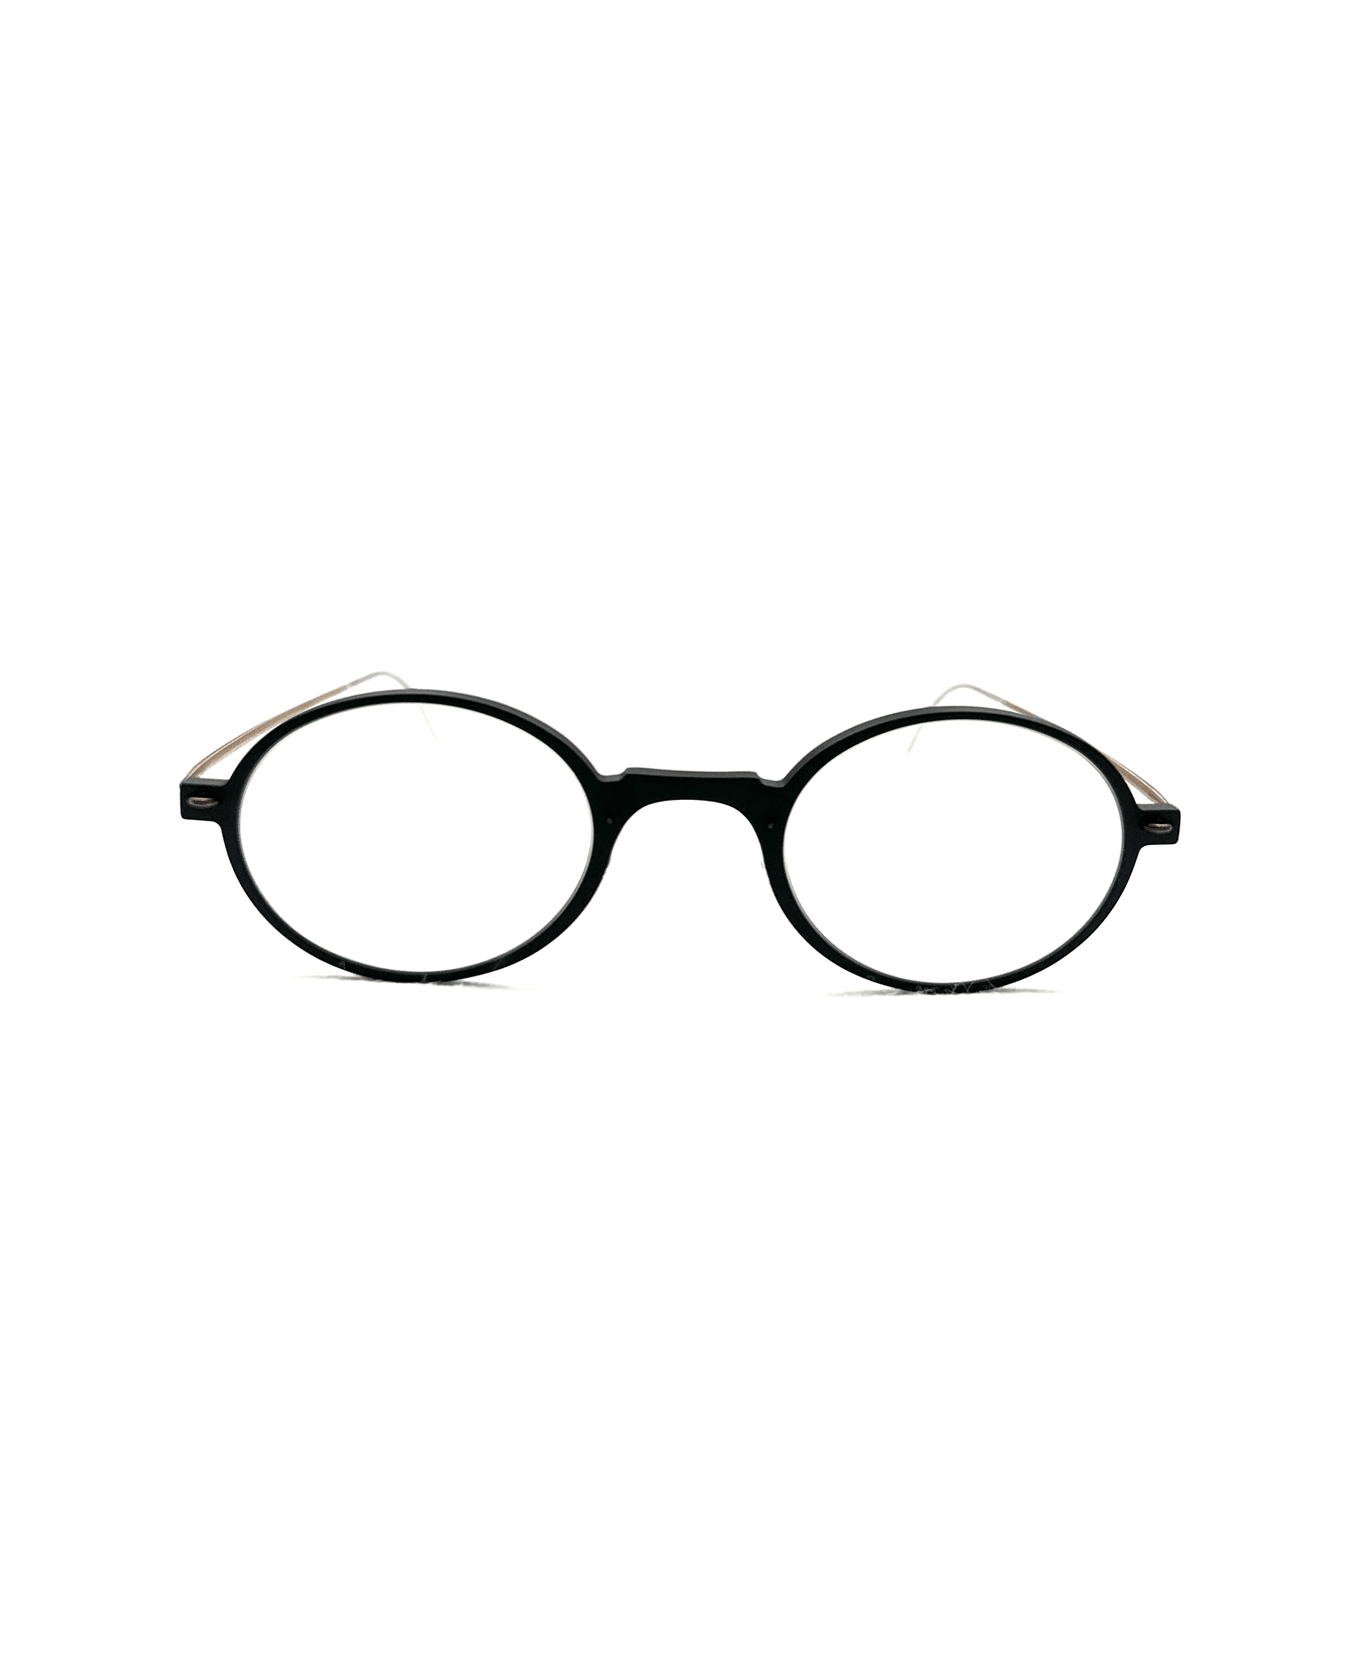 LINDBERG N.o.w. 6508 D16 - U12 Glasses - Nero